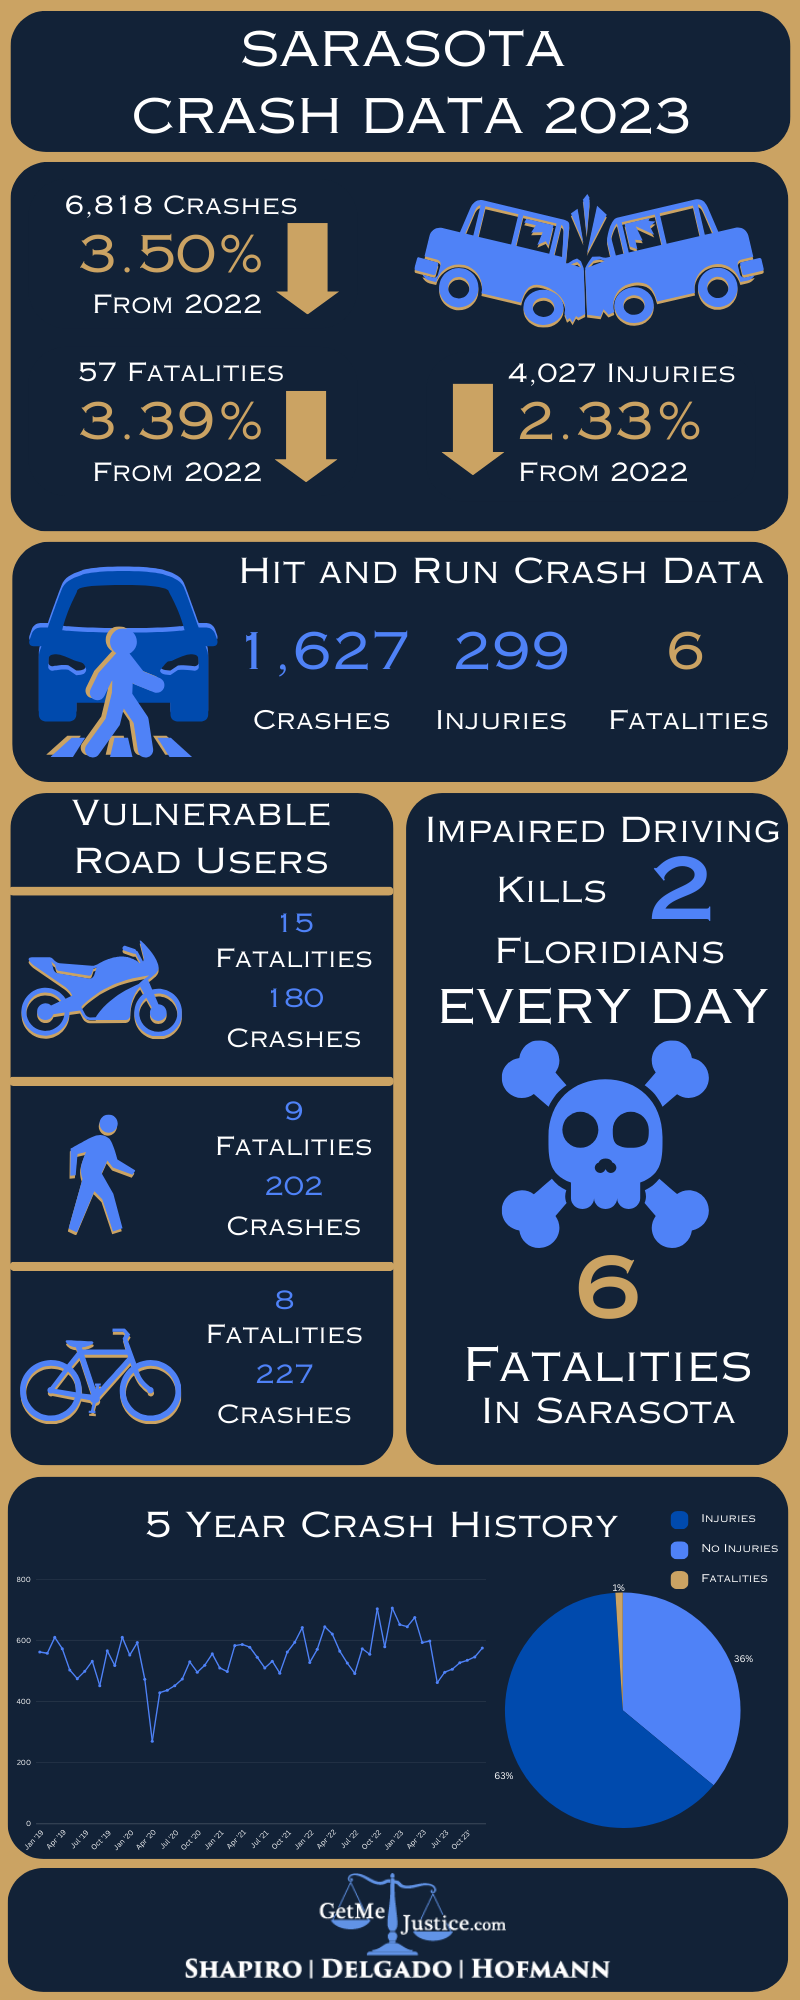 Sarasota Crash Data 2023 Infographic